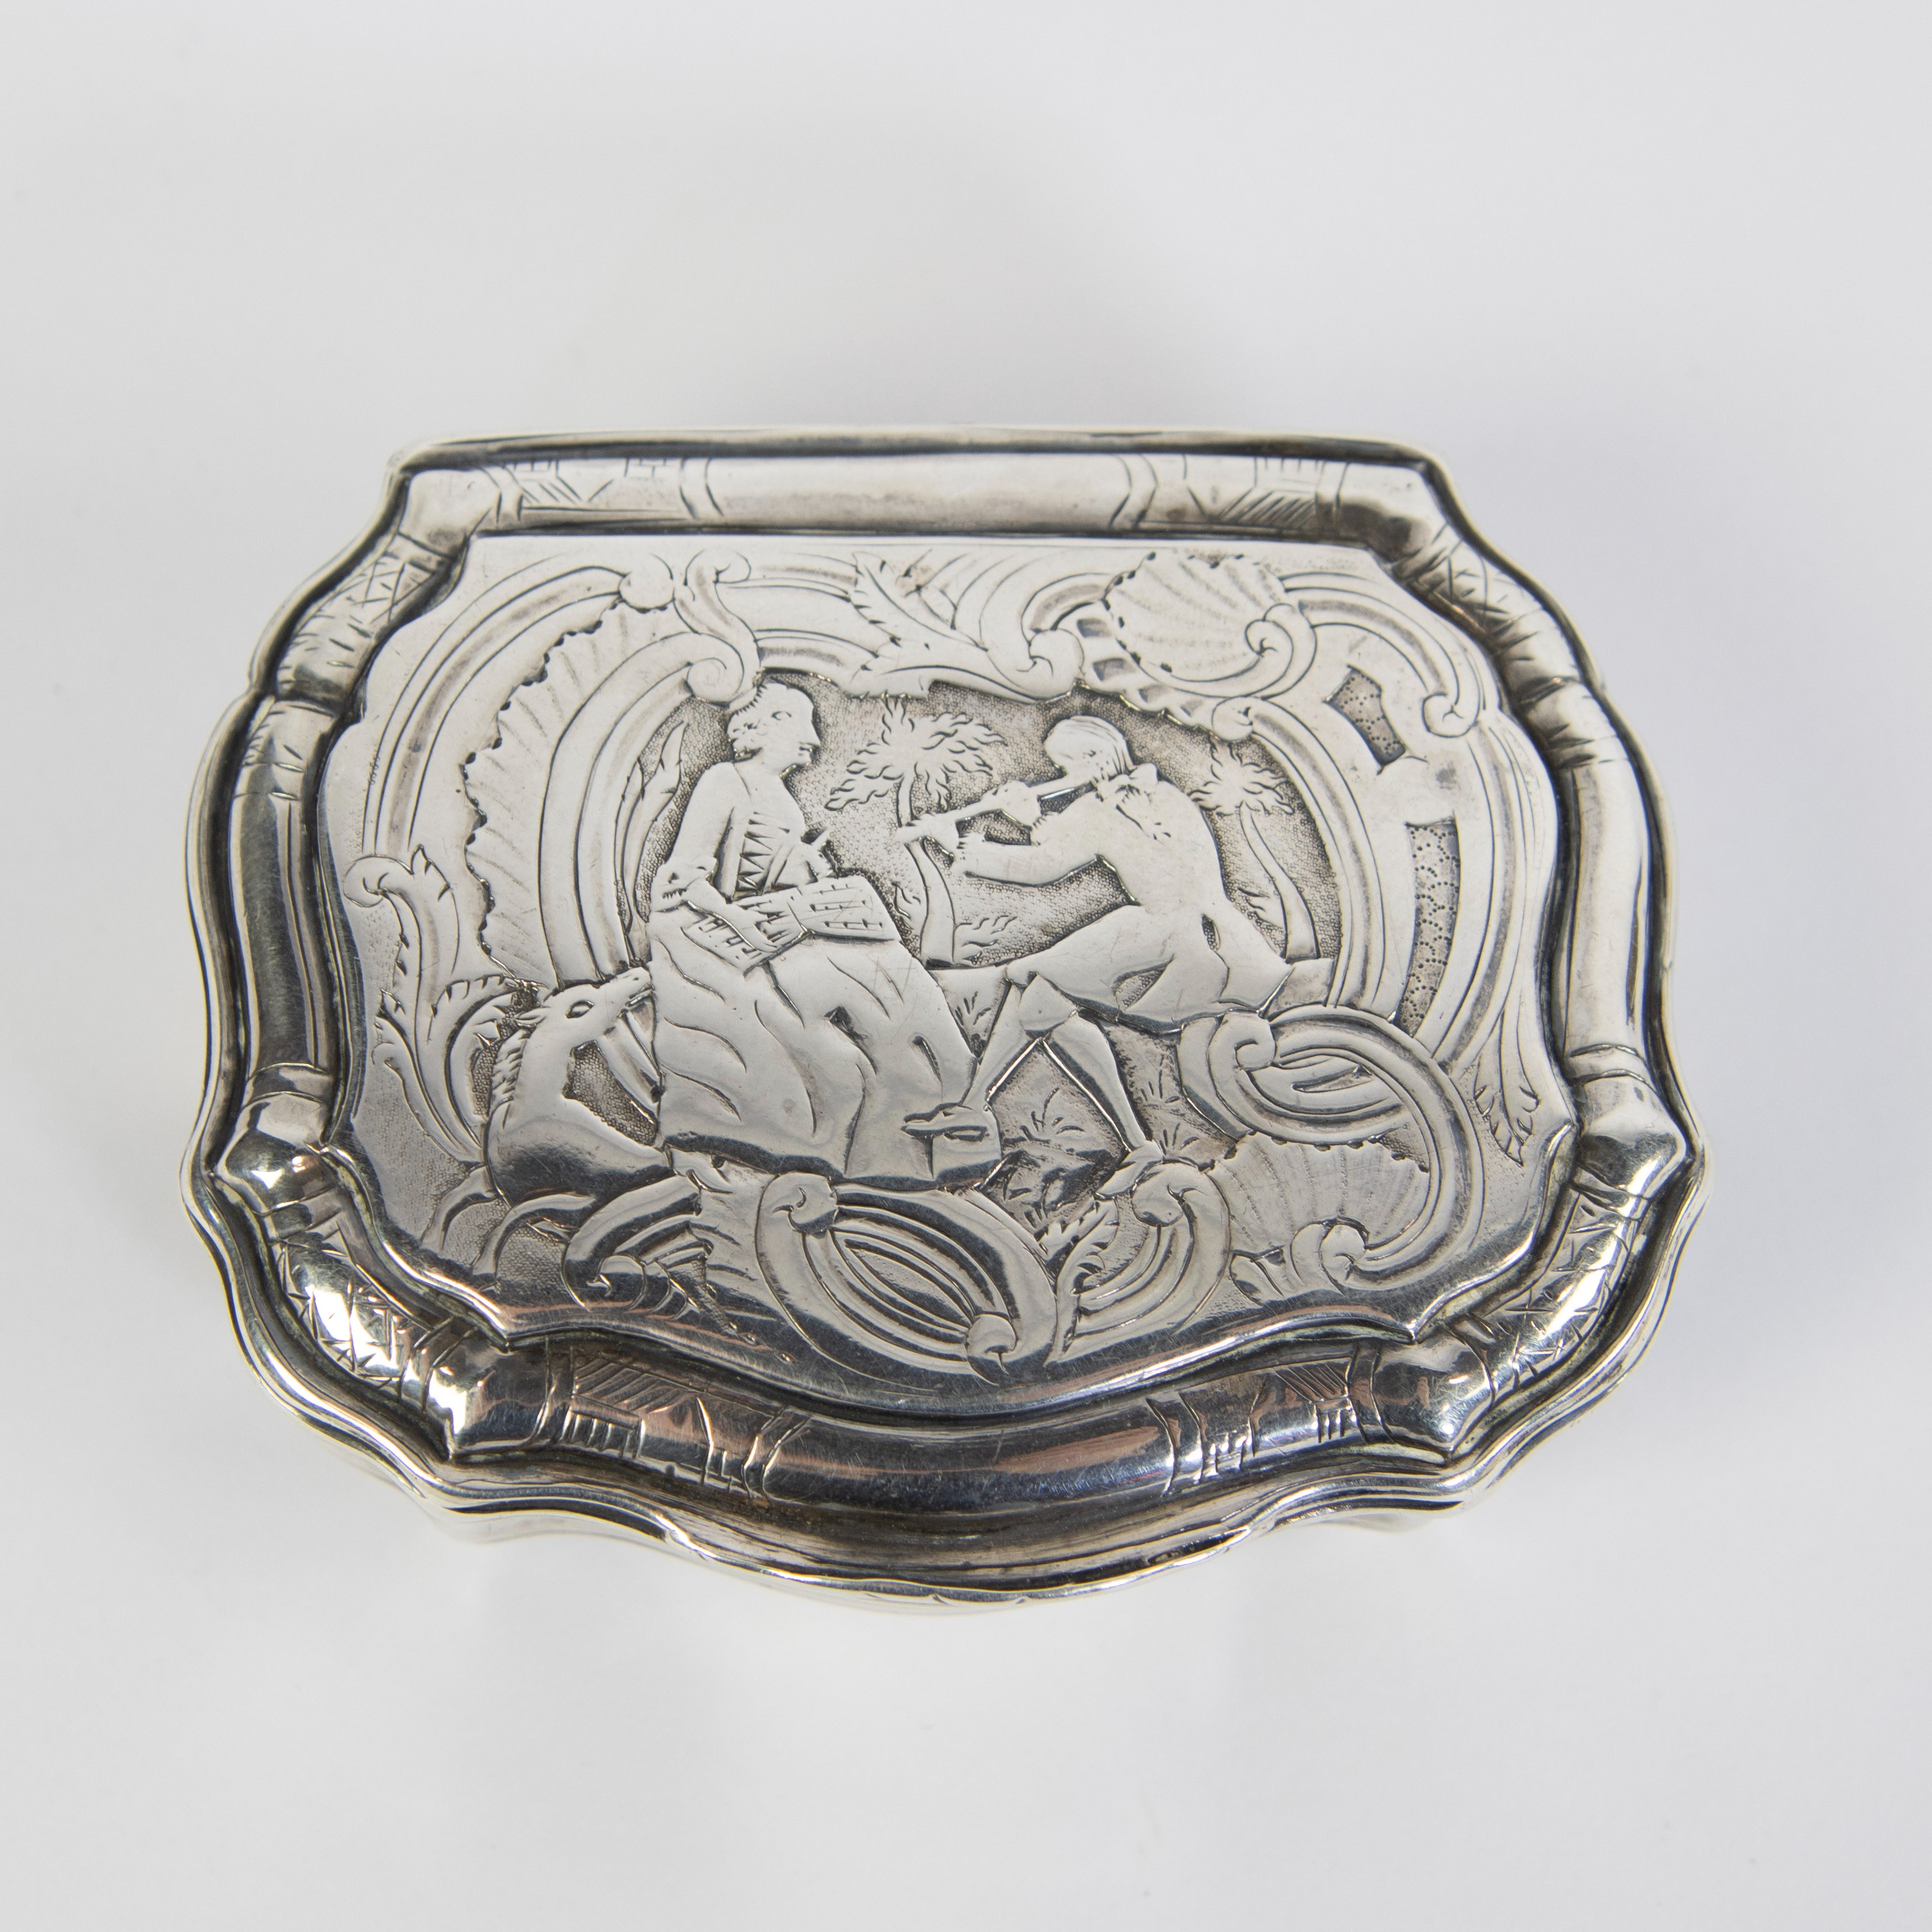 A silver tobacco box 1753 Ath Louis XV d'époque, 5 hallmarks - Image 2 of 8